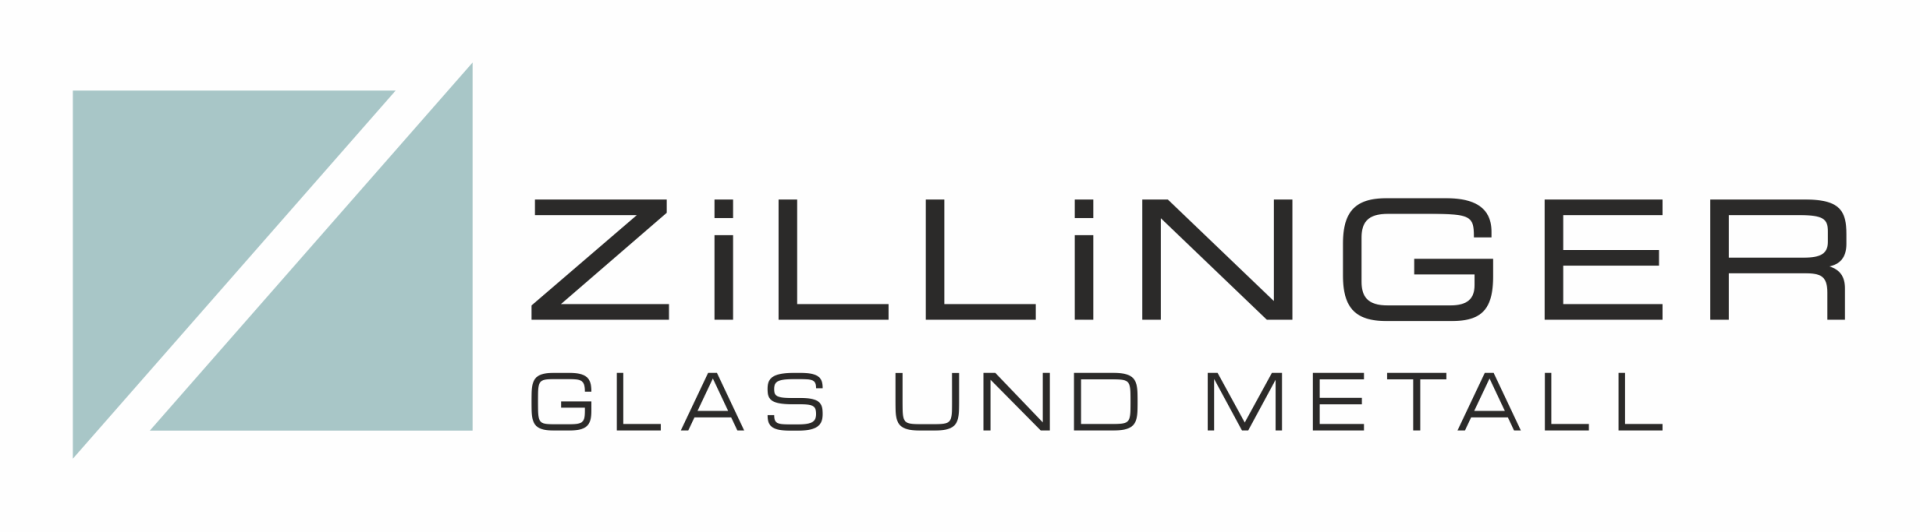 Zillinger_Glas